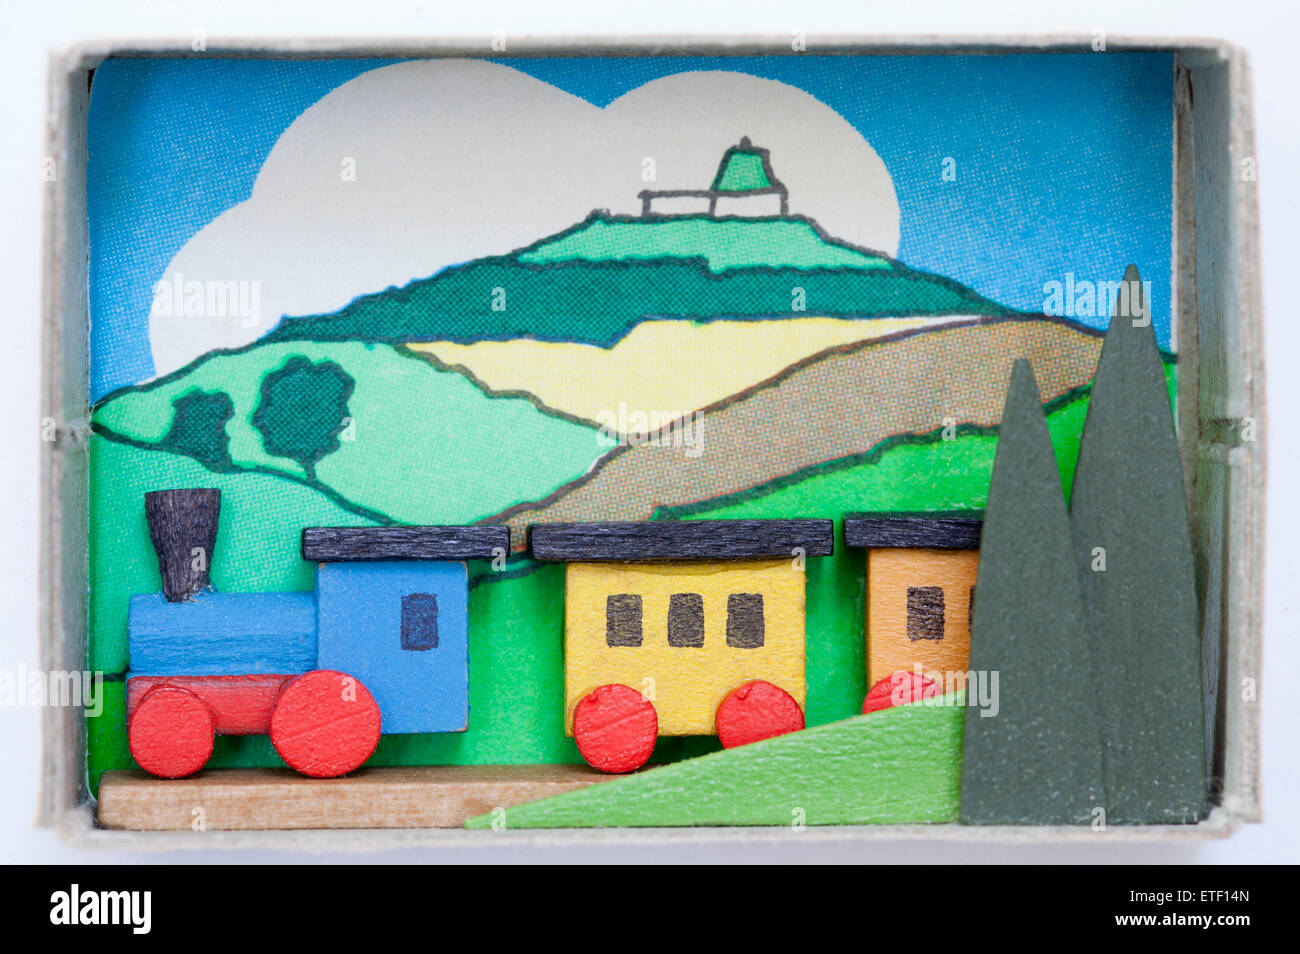 Vintage Matchbox mit Hand gemacht Holz Volkskunst Spielzeug. Erzgebirgische Volkskunst in der Zundholzschachtel Stockfoto